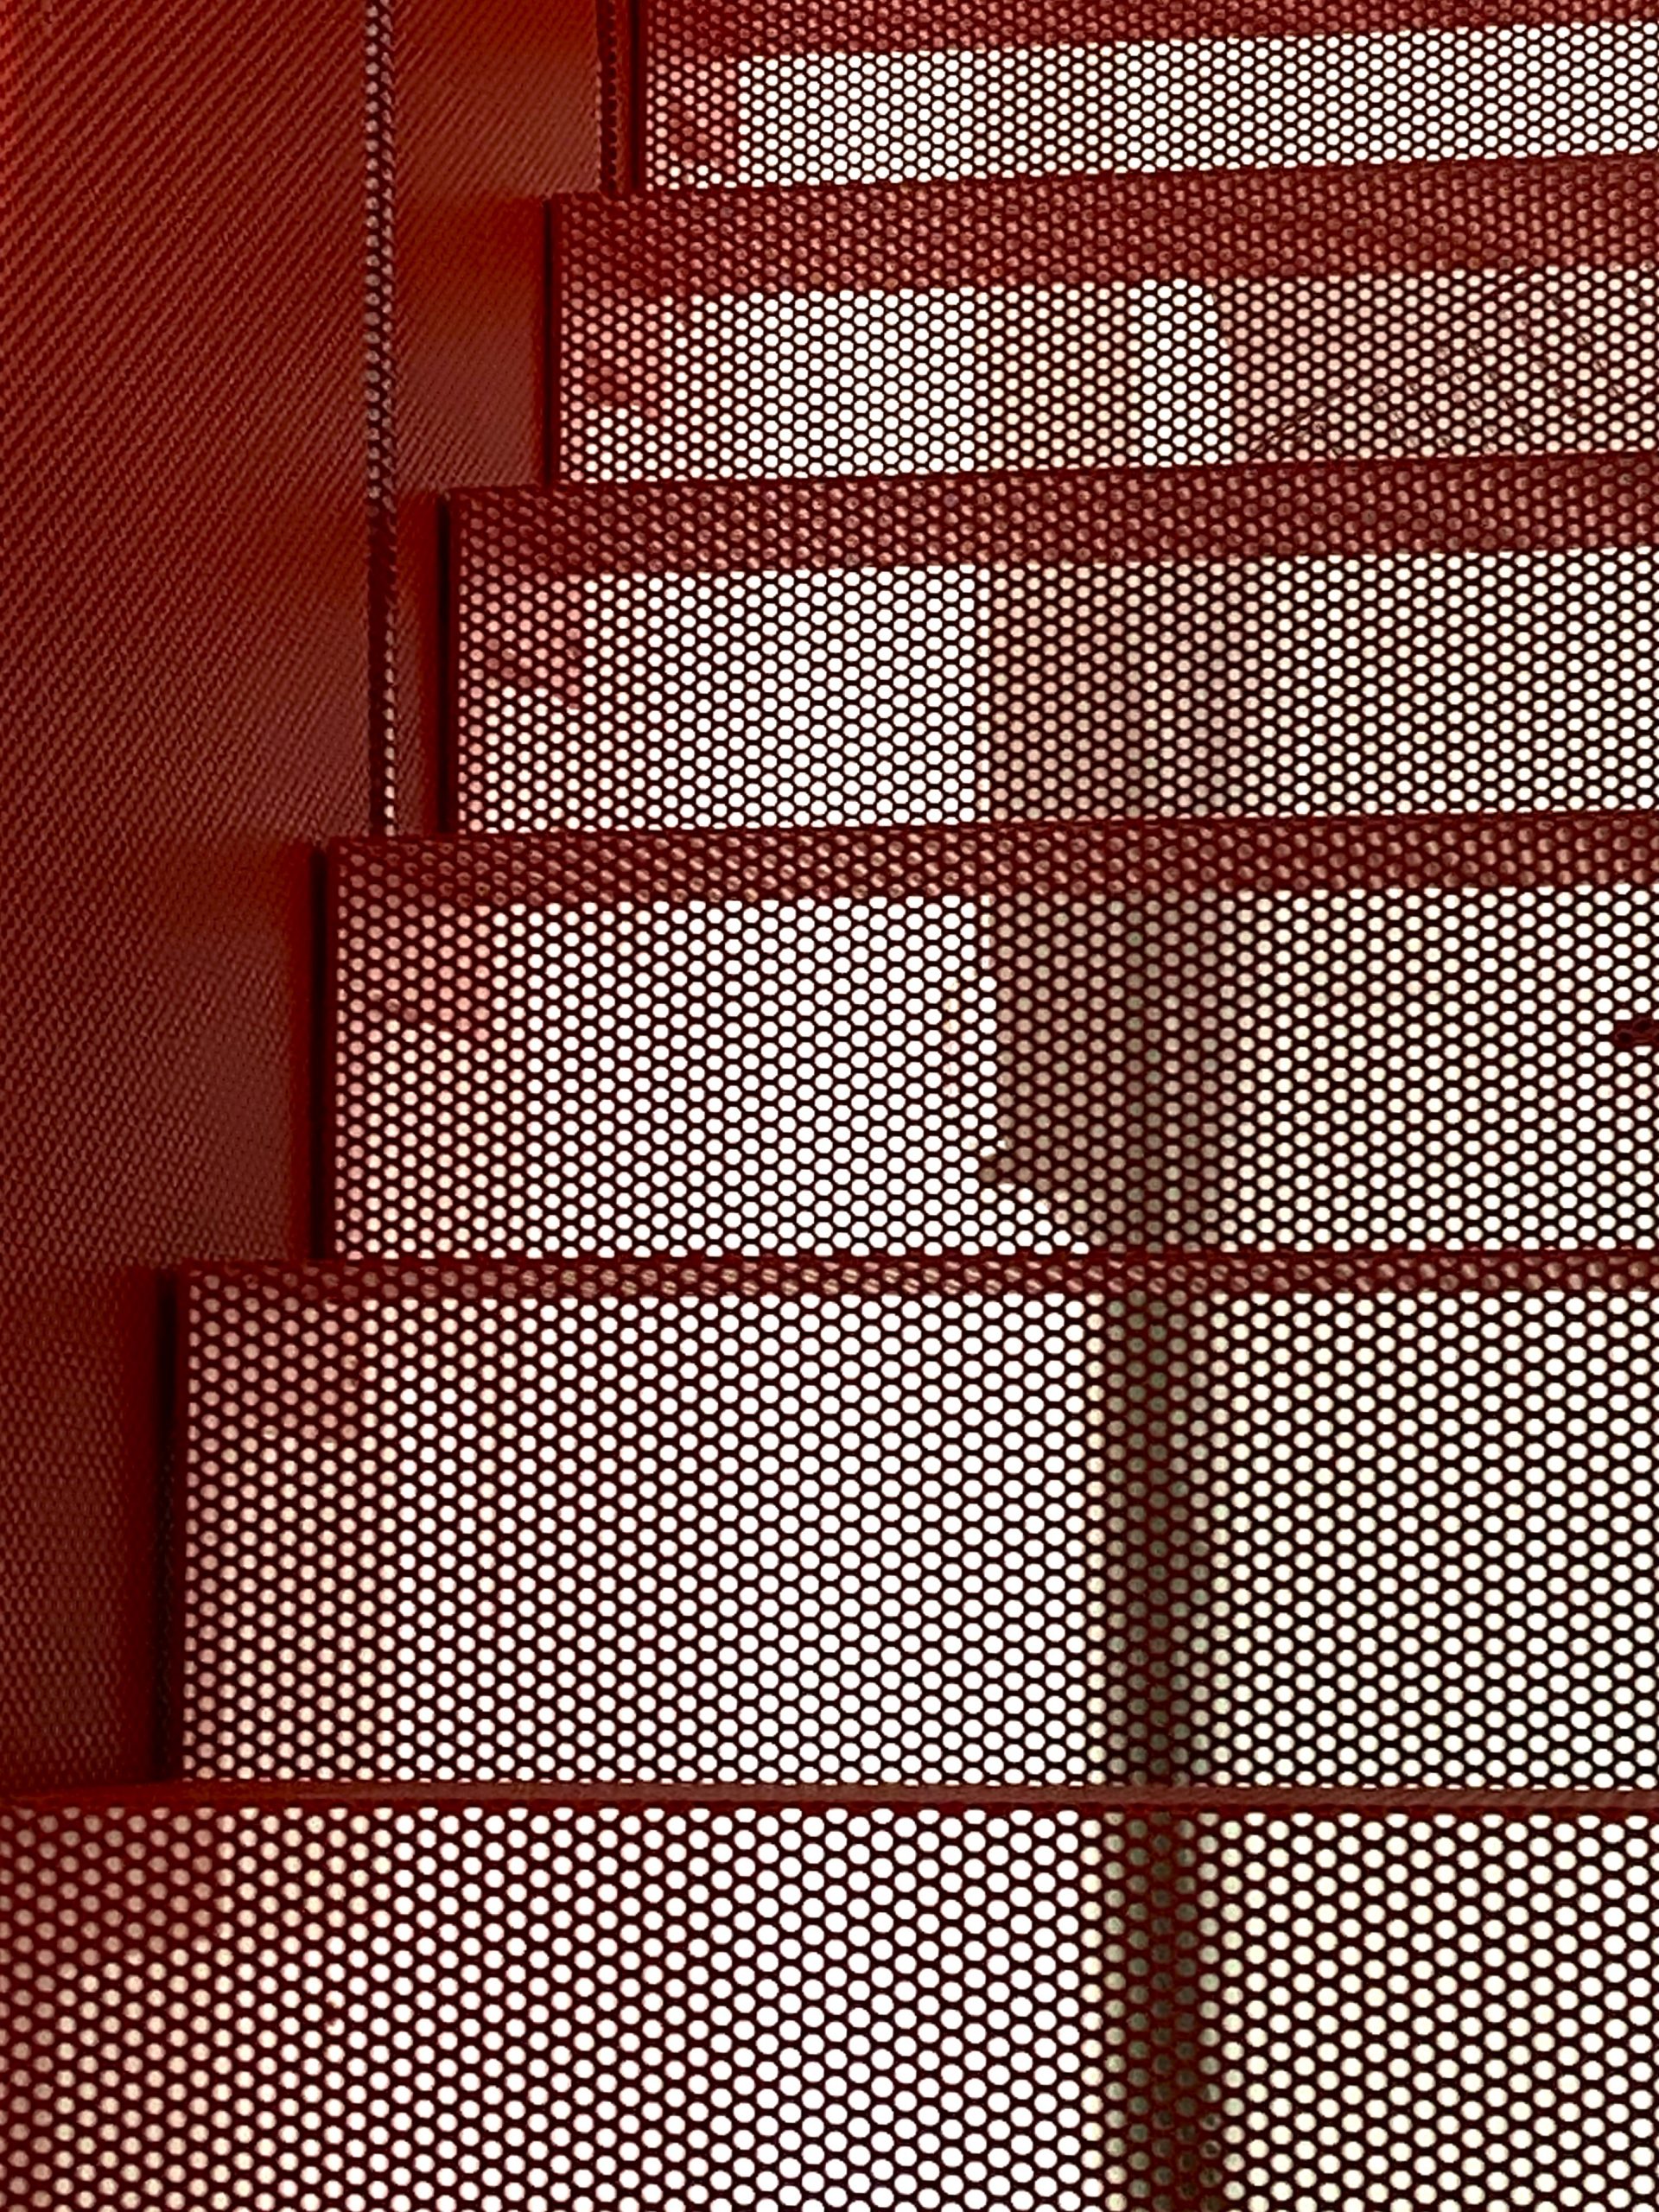 czerwone schody z perforacji